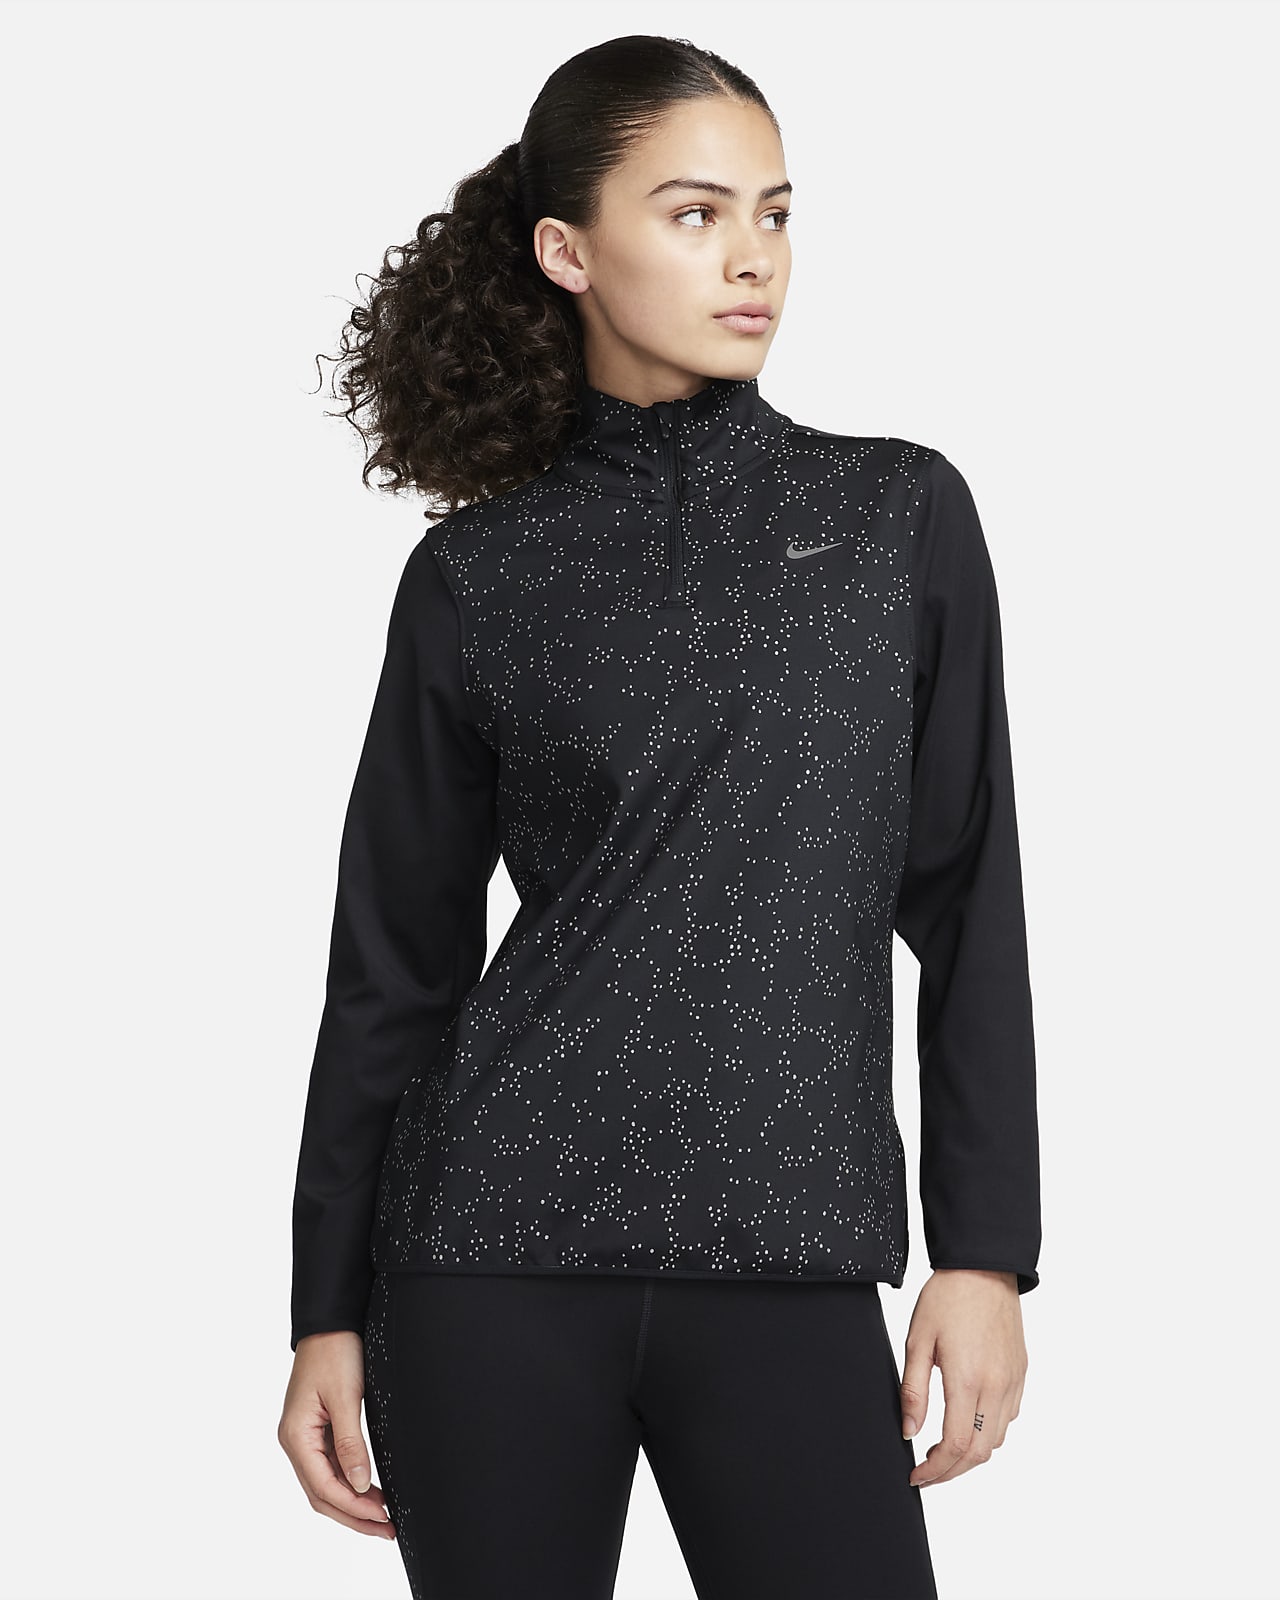 Nike Swift Element Women's 1/4-Zip Running Top